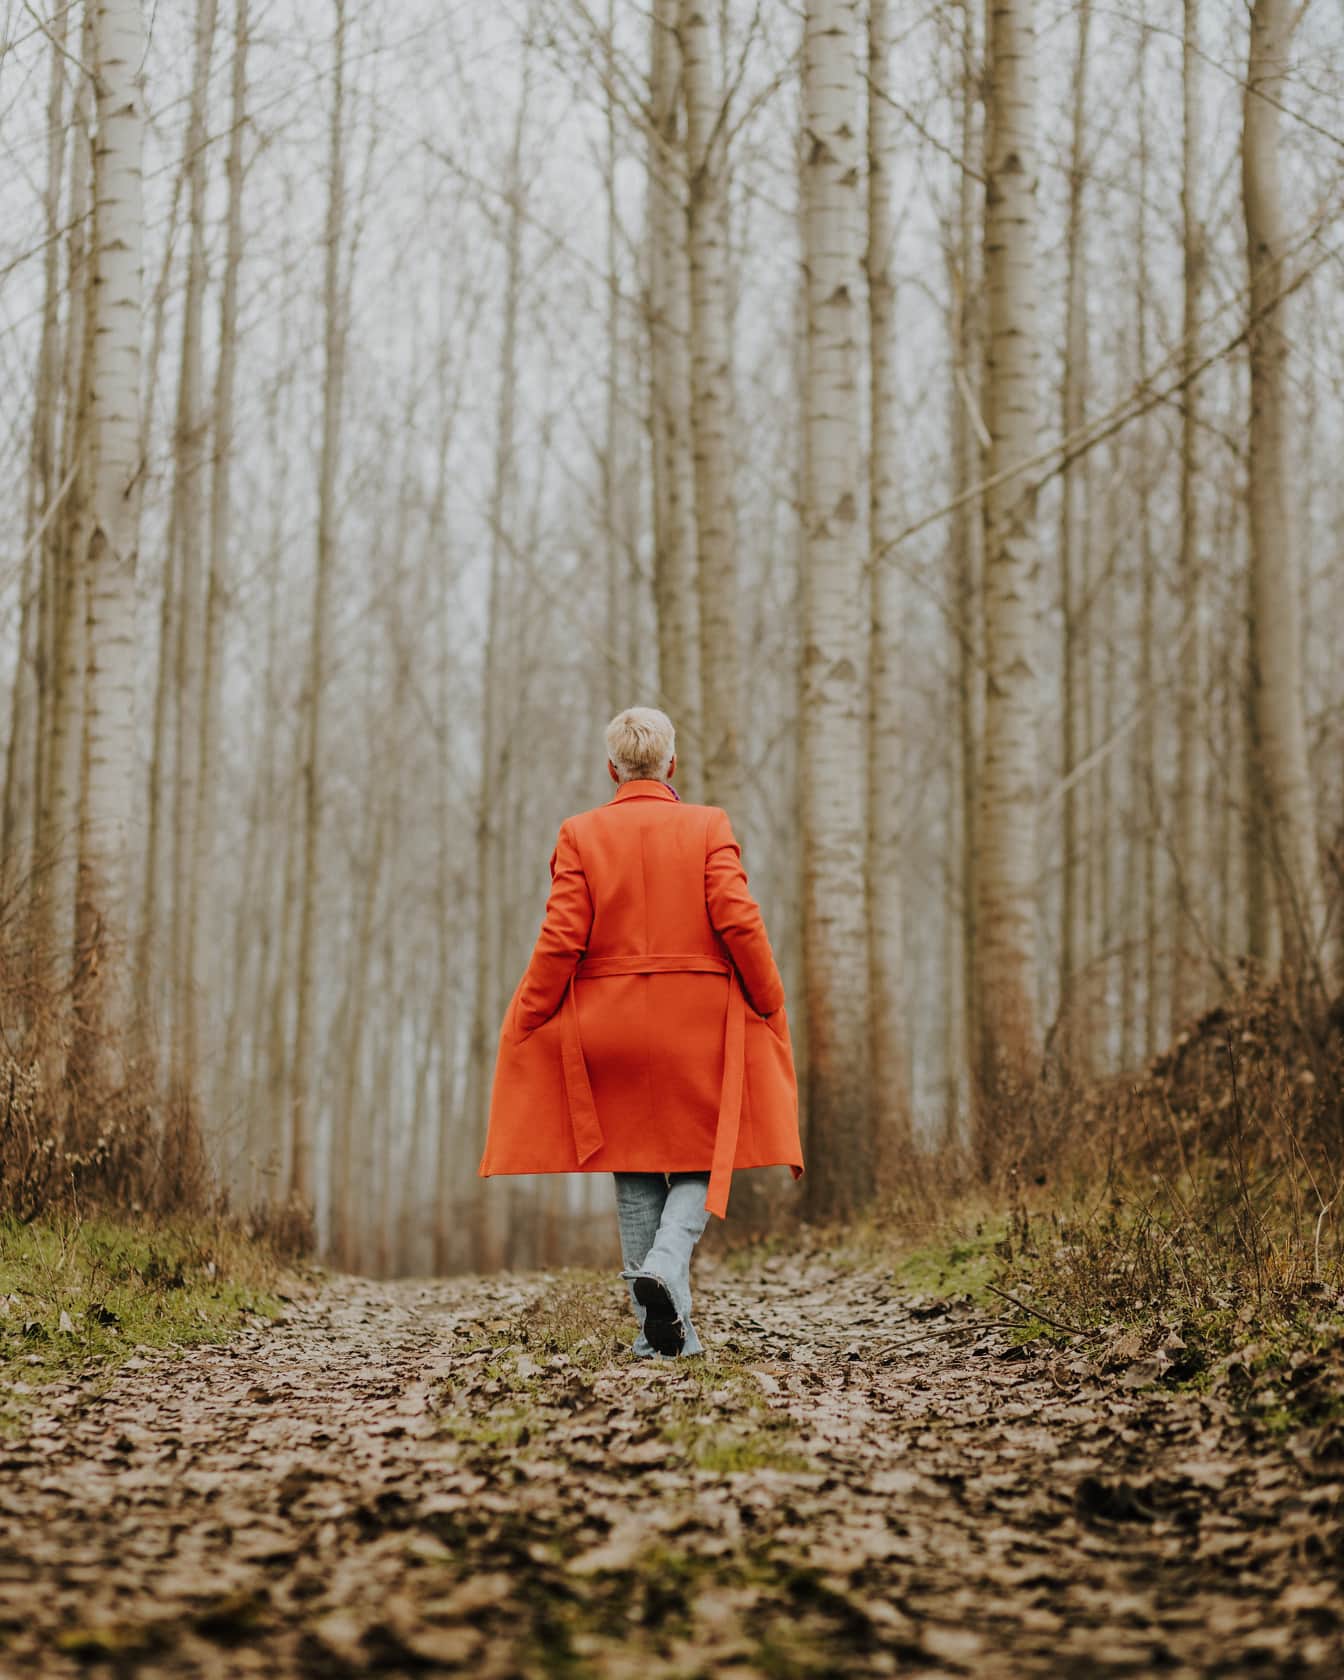 오렌지 옐로우 코트를 입고 숲길을 걷는 어린 자궁